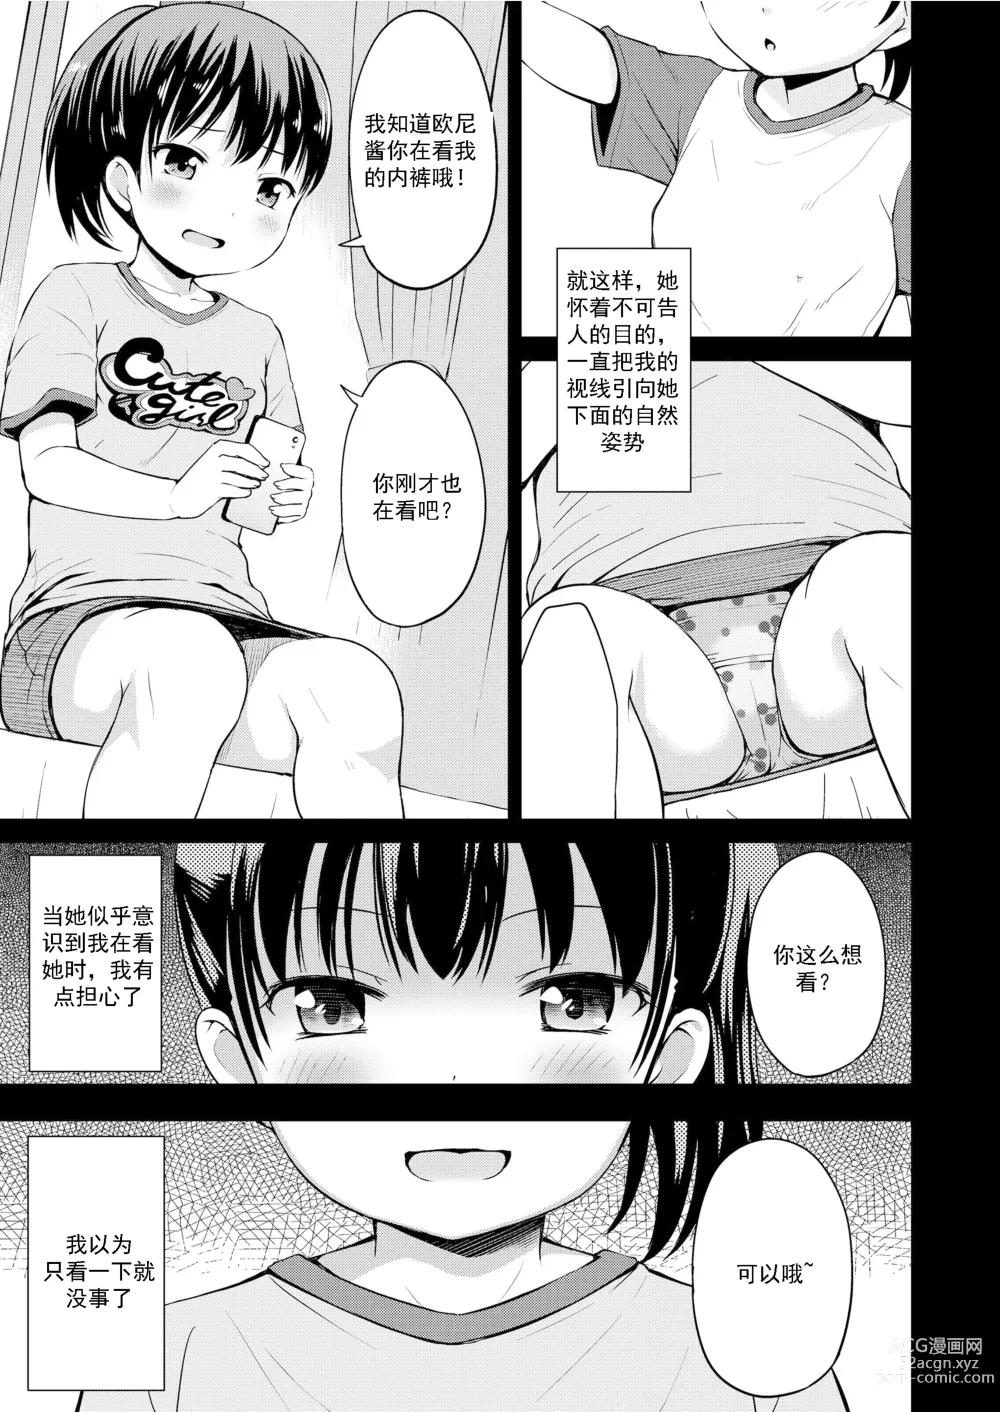 Page 6 of manga Nigirare. Zenpen